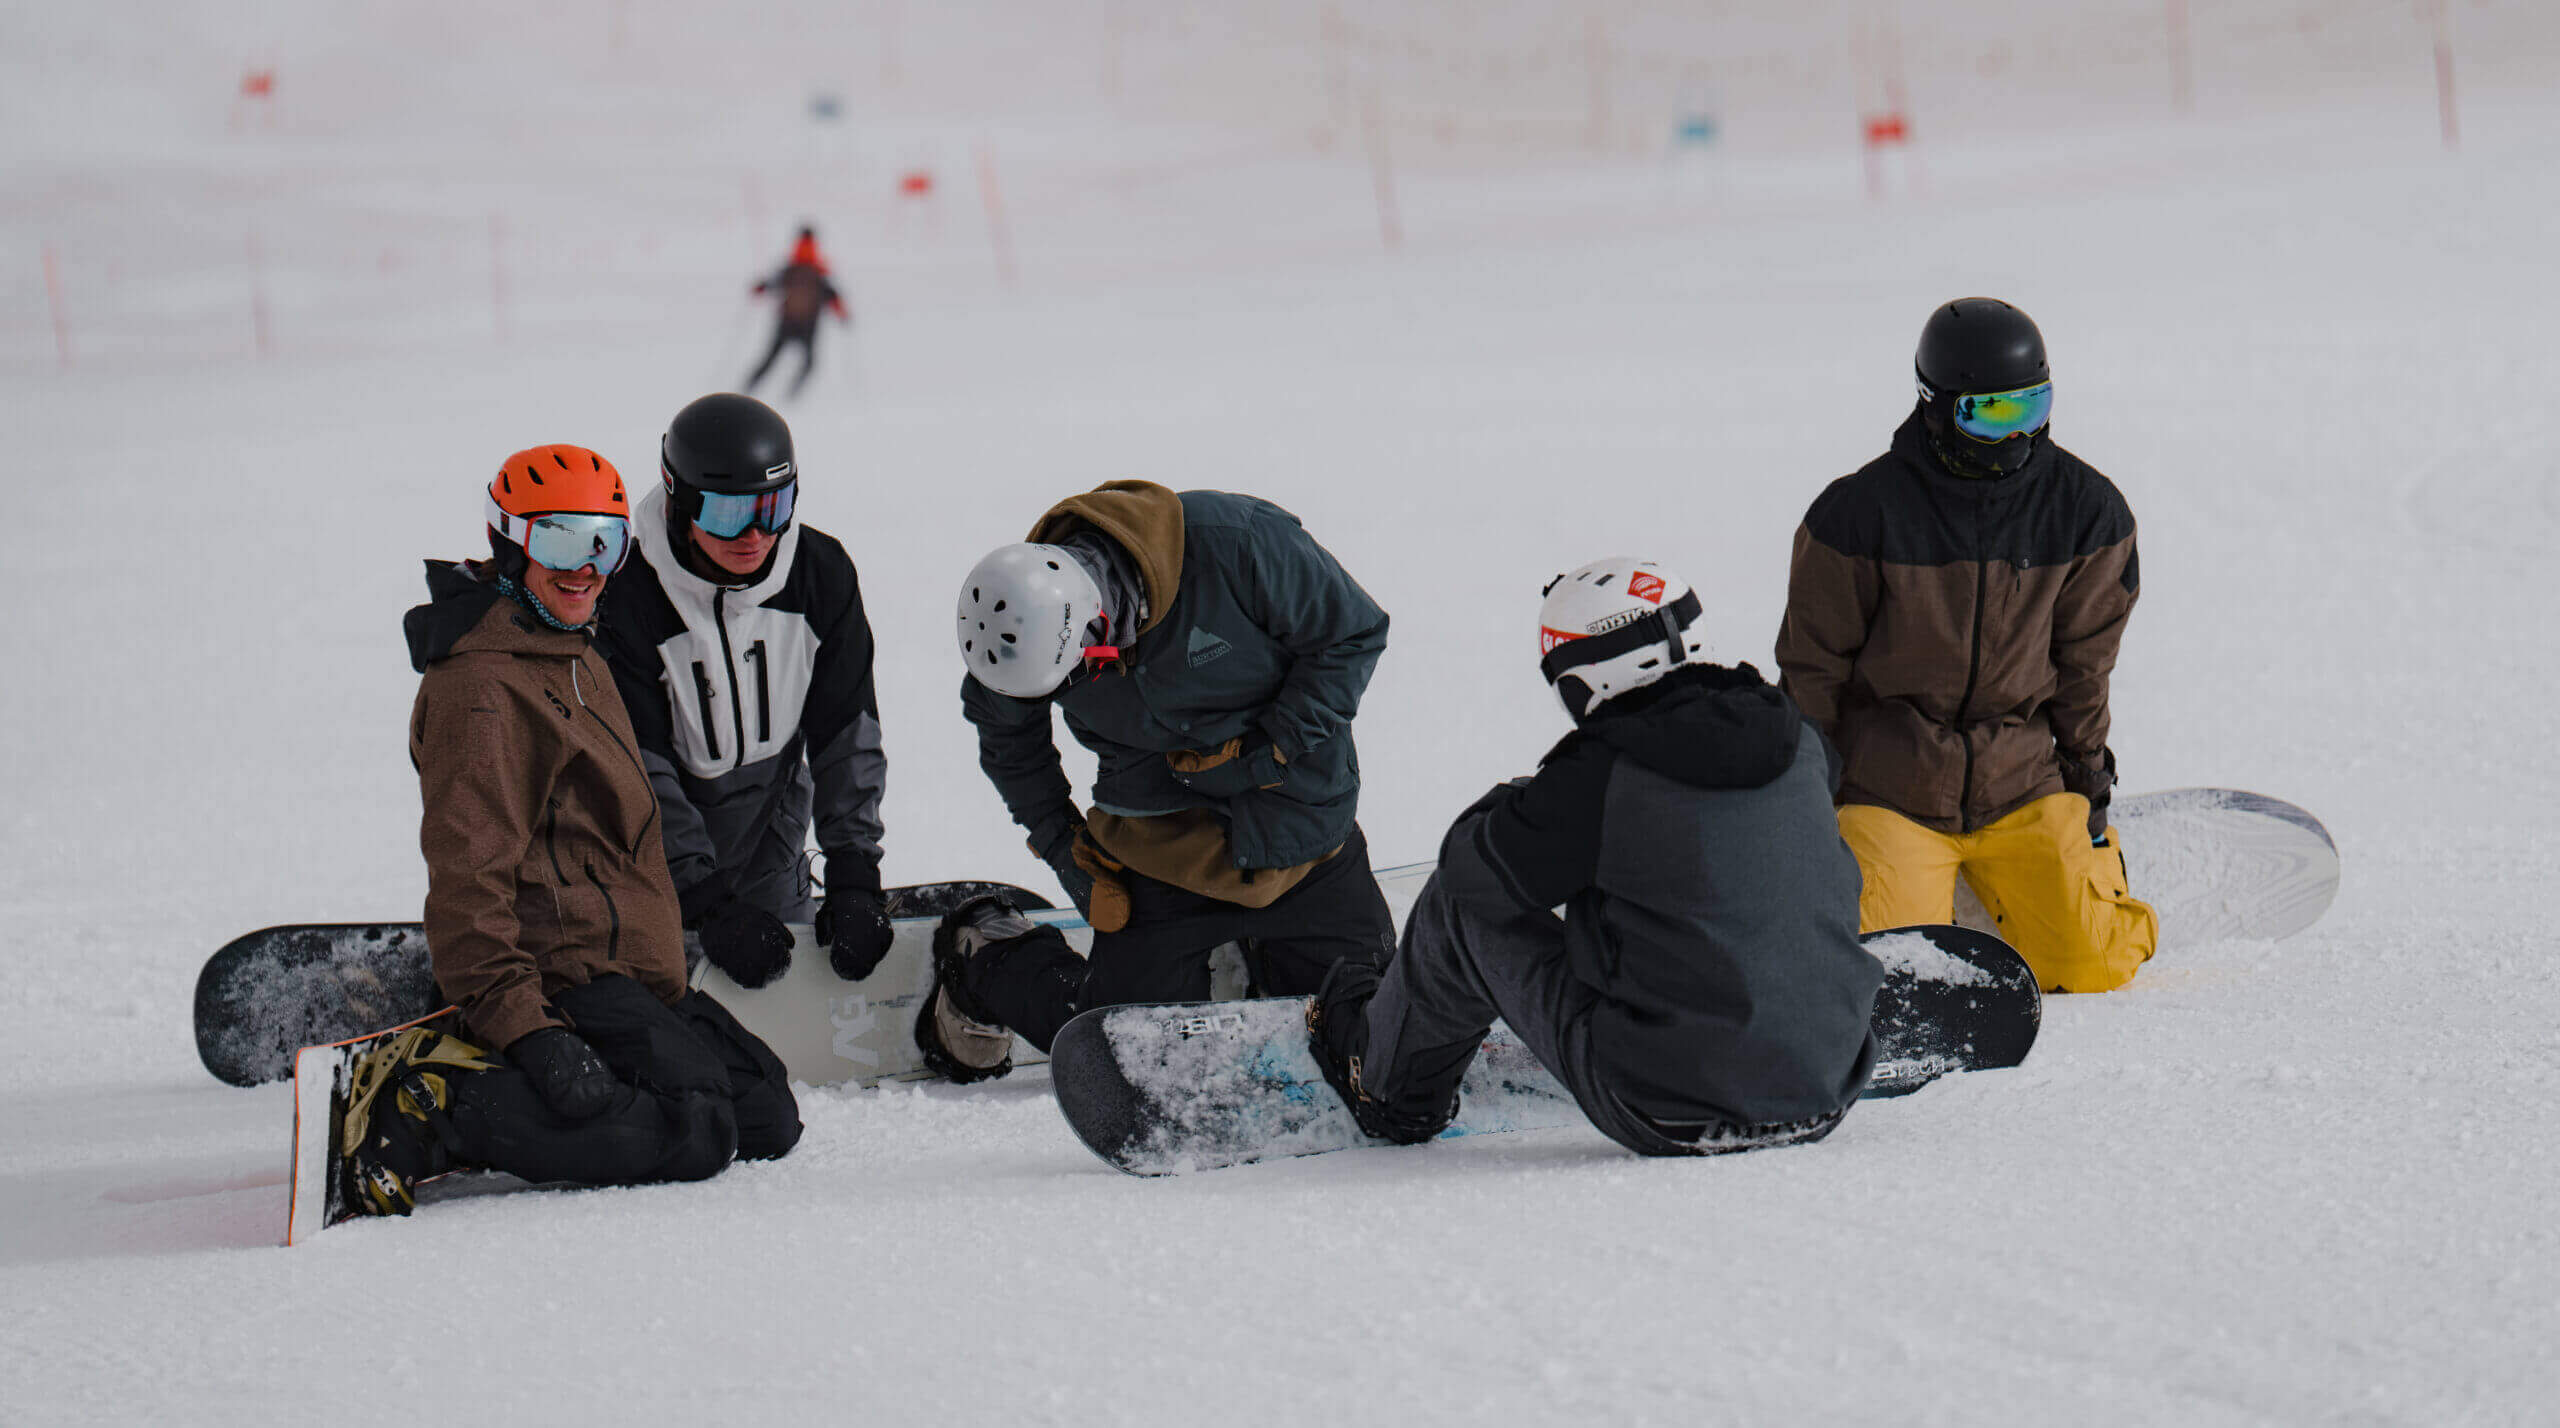 Ski school Kaprun - school trips